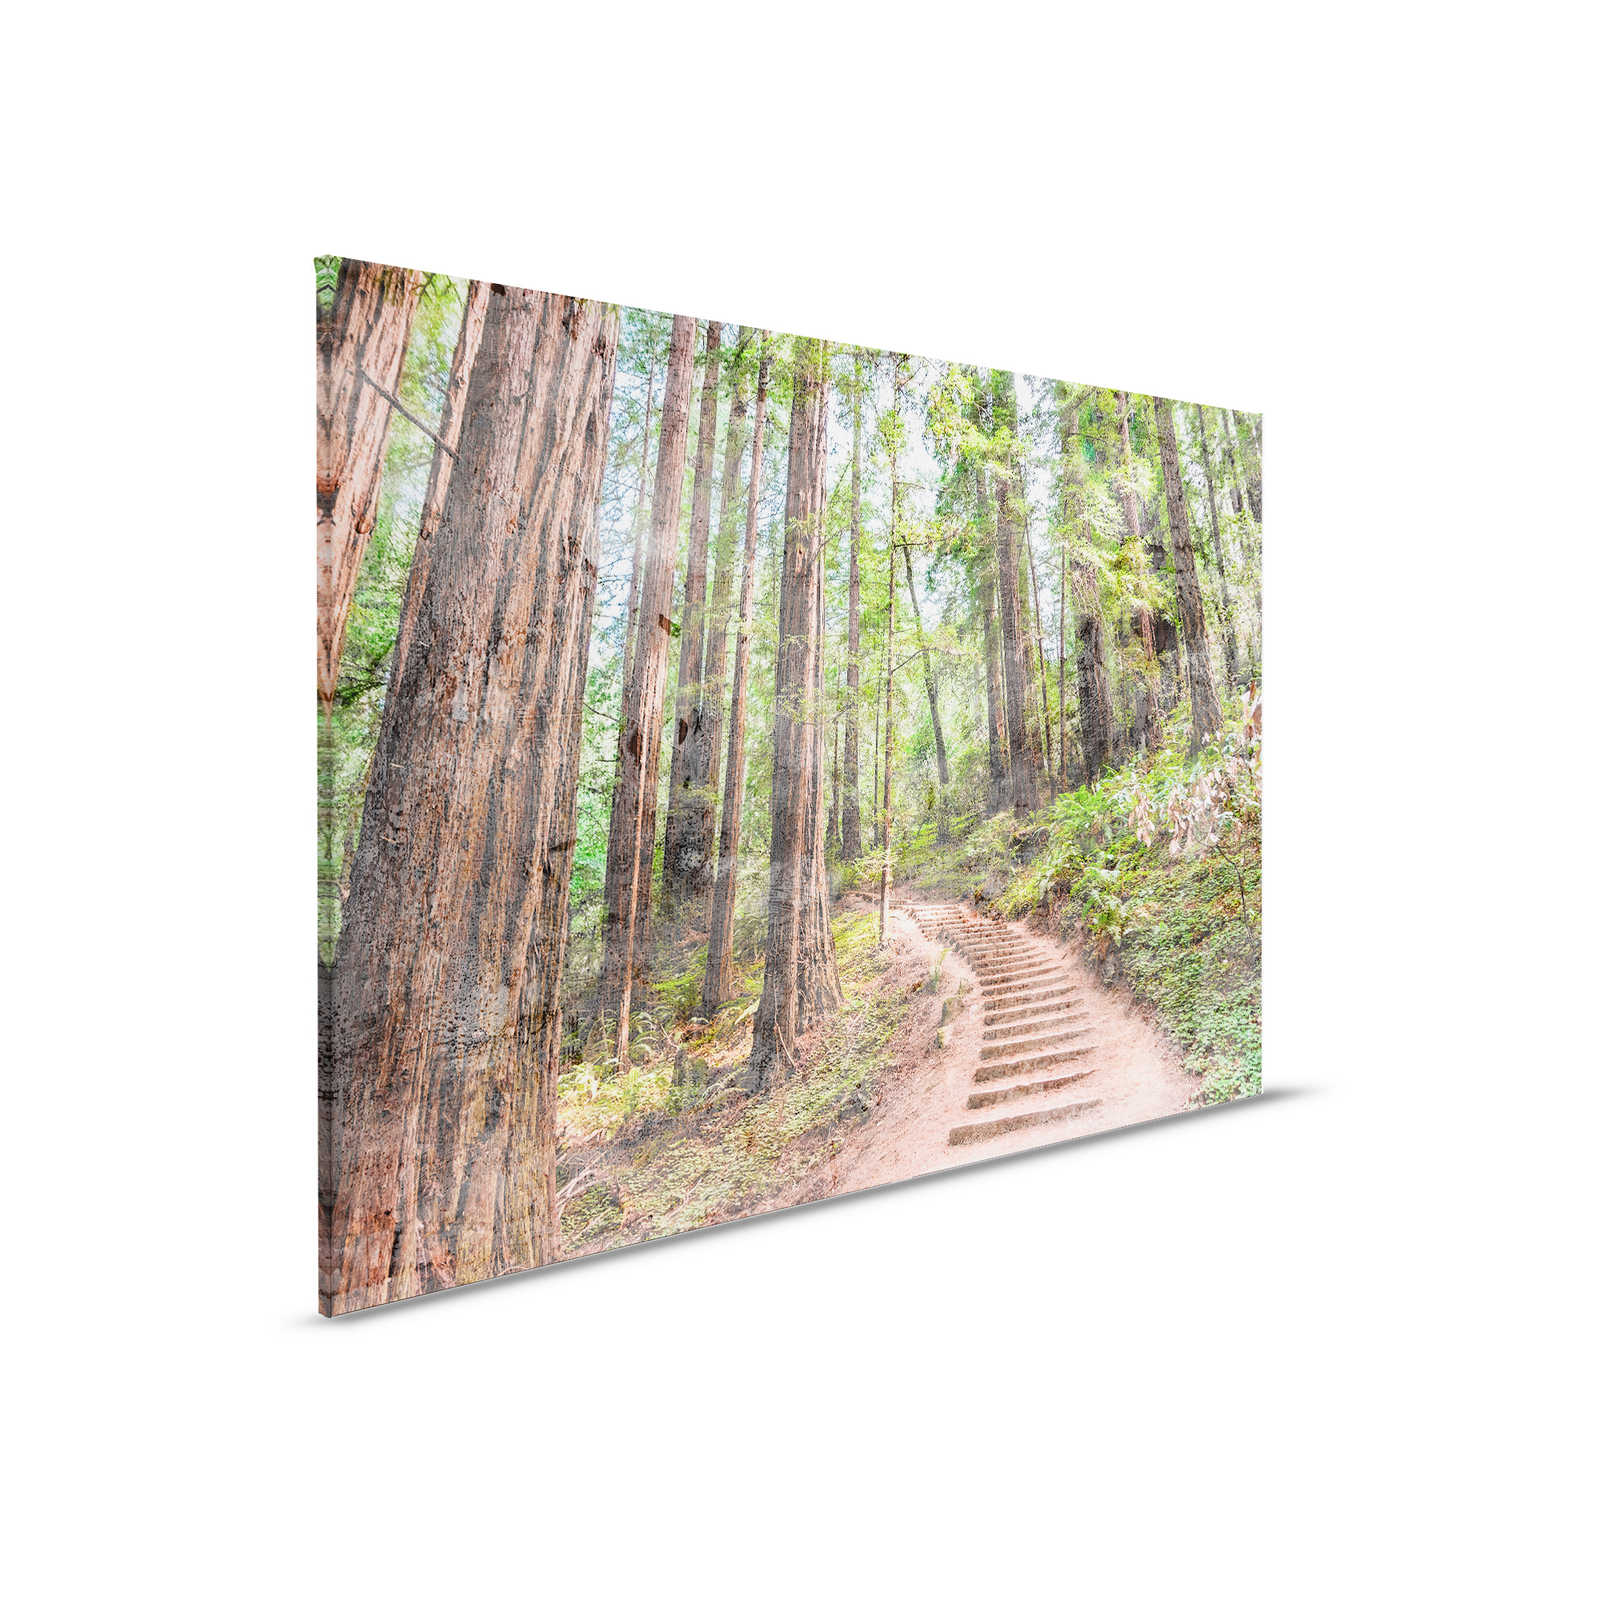 Leinwand mit Holztreppe durch den Wald | braun, grün, blau – 0,90 m x 0,60 m
